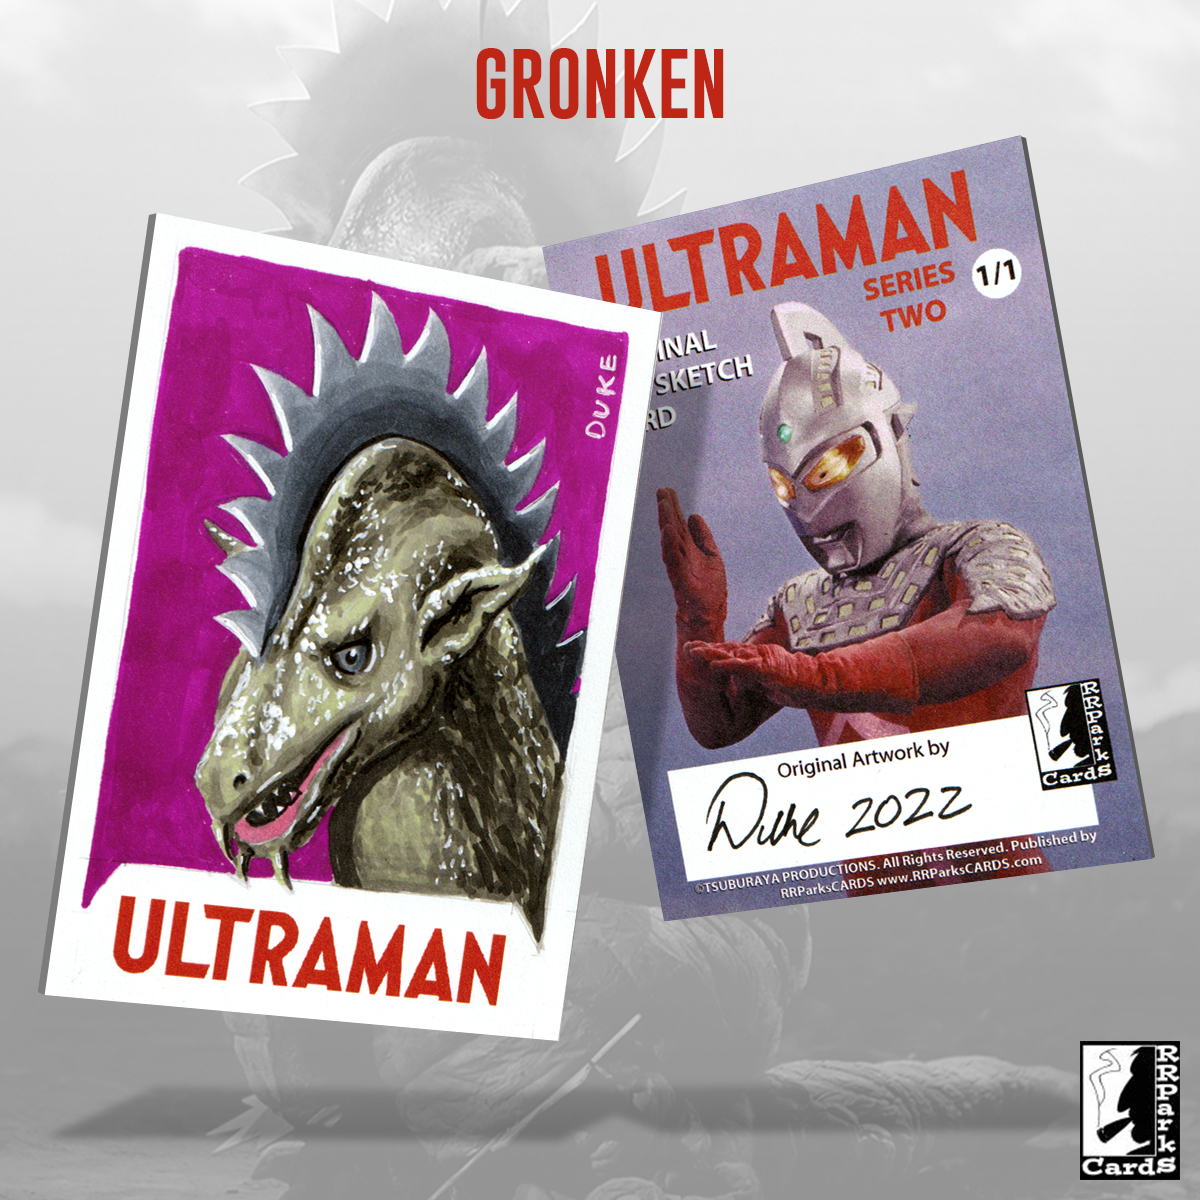 Ultraman Series 2 Gronken Sketch Card by Duke